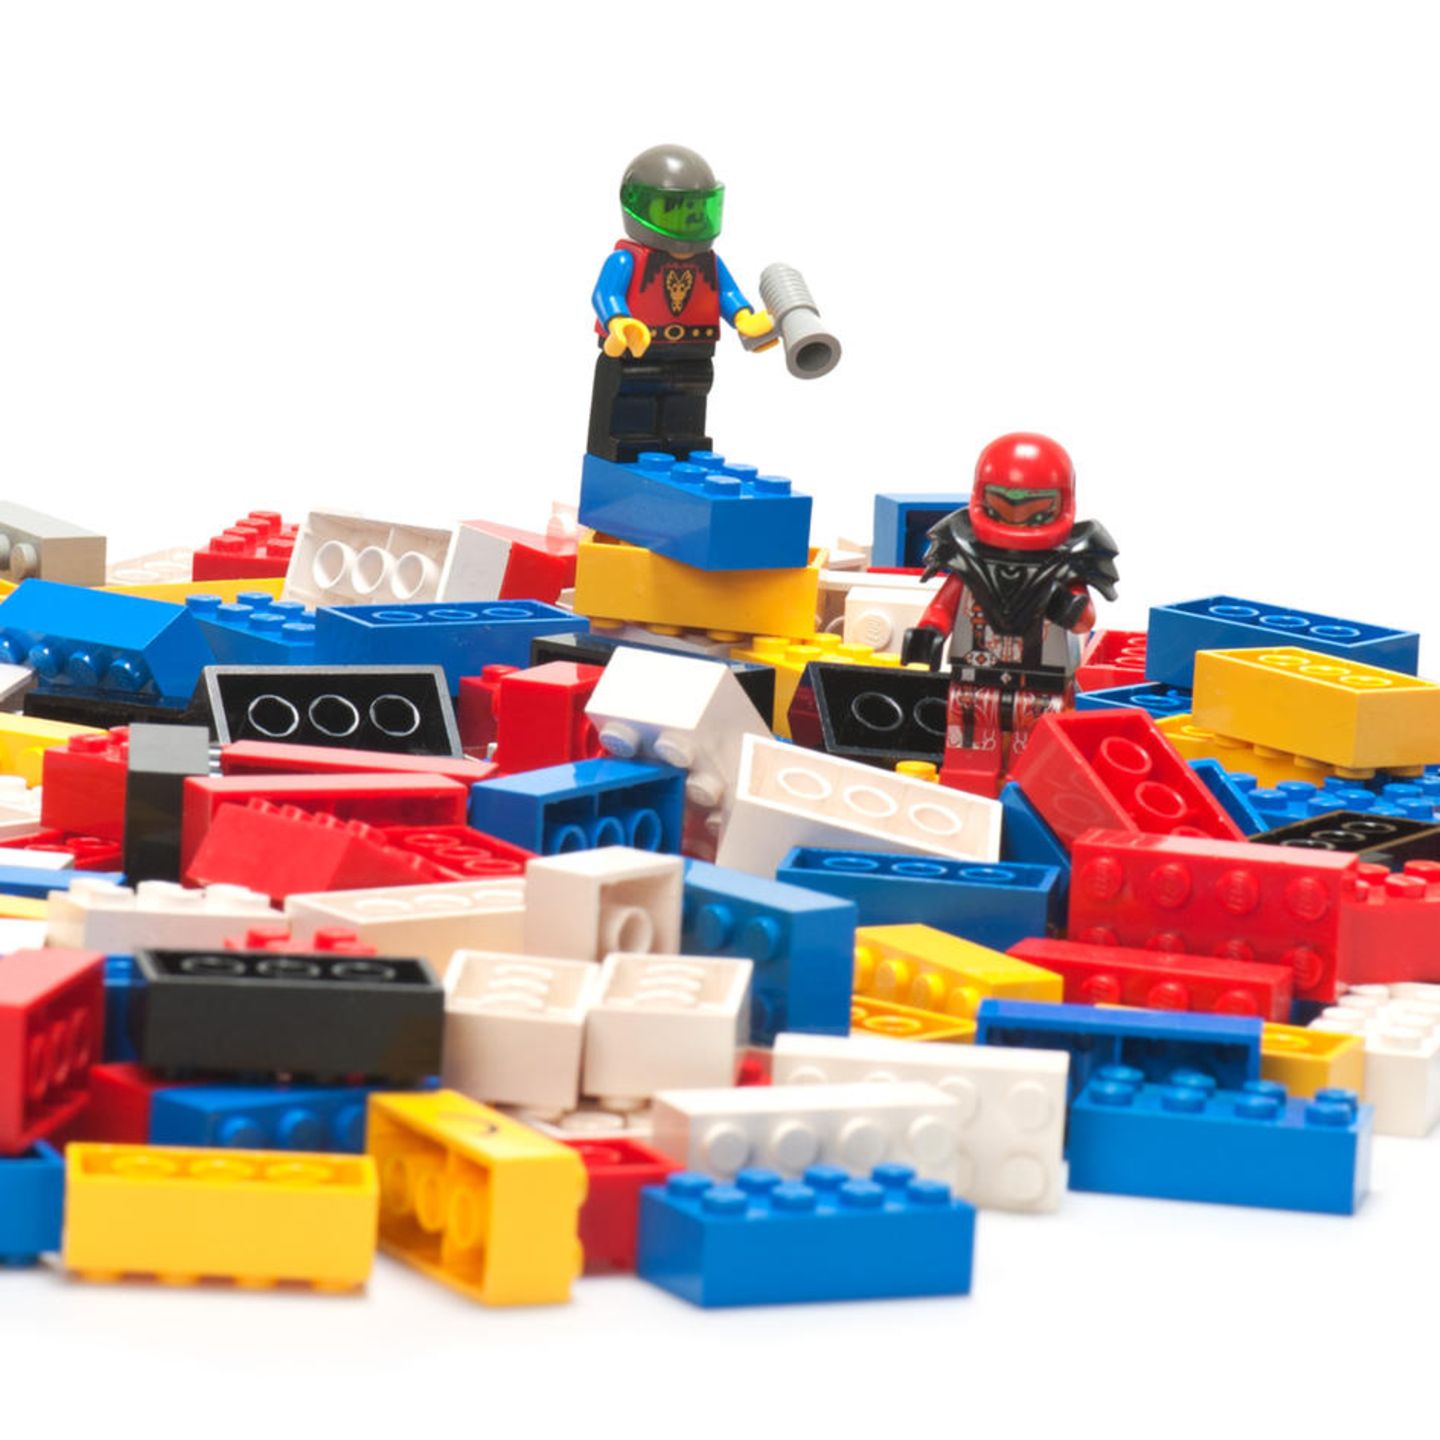 Lego-Sets für Kinder und Erwachsene: Acht | STERN.de